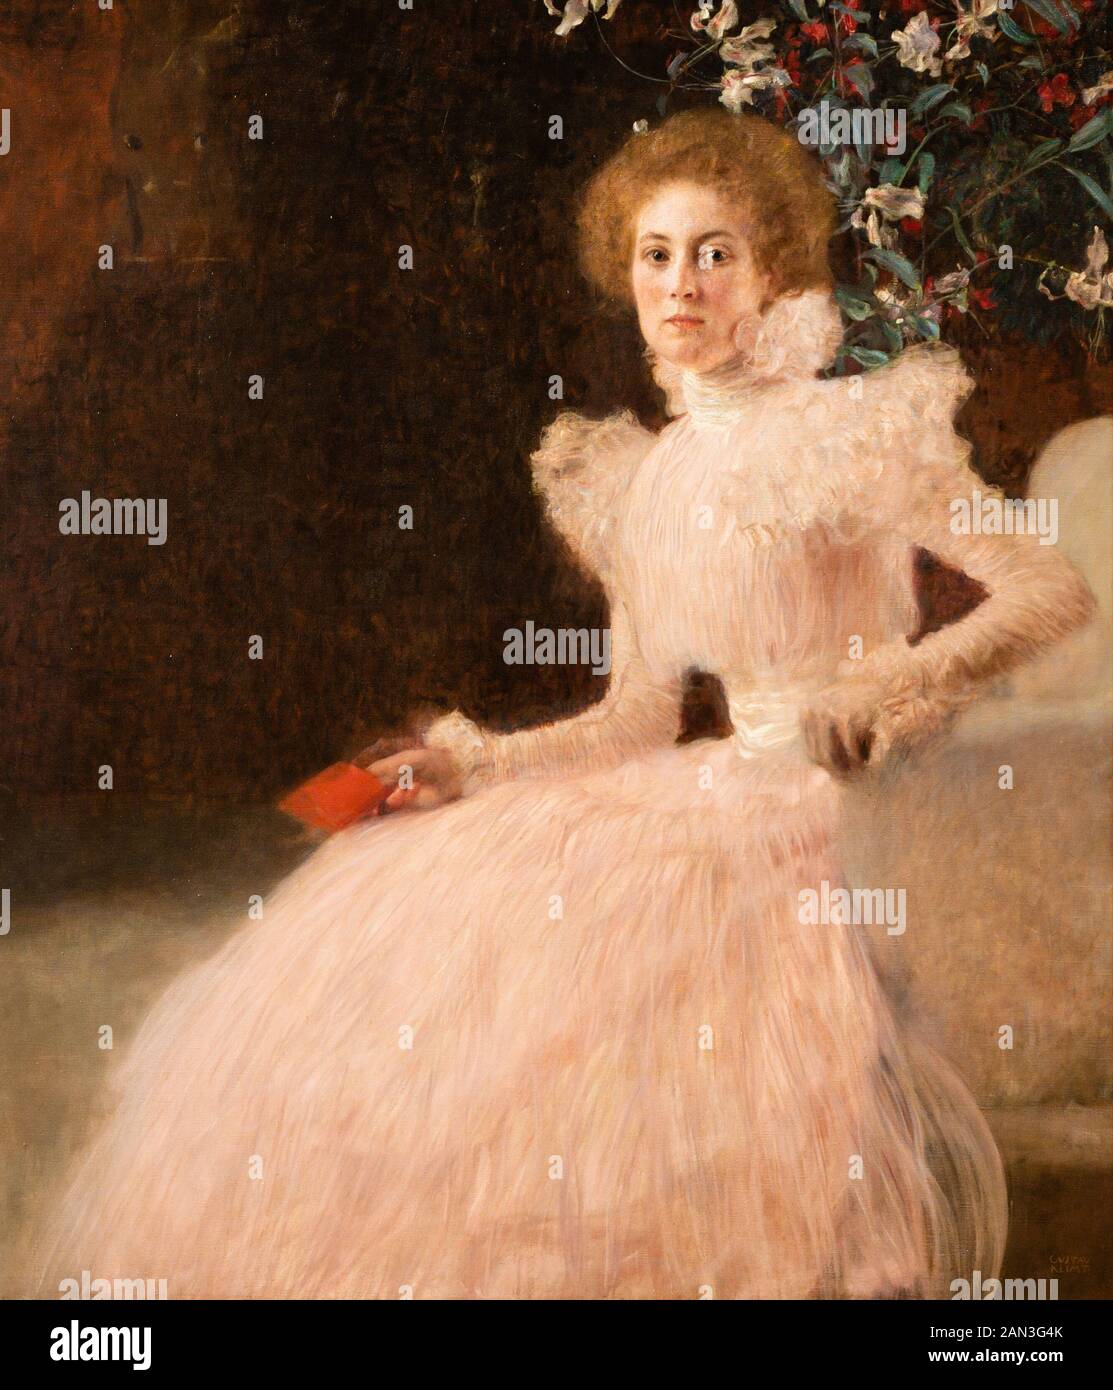 Portrait von Sonja Knips. Öl auf Leinwand. 1897/1898. Von den Österreichischen symbolistische Maler Gustav Klimt. Belvedere Museum, Wien, Österreich. Stockfoto